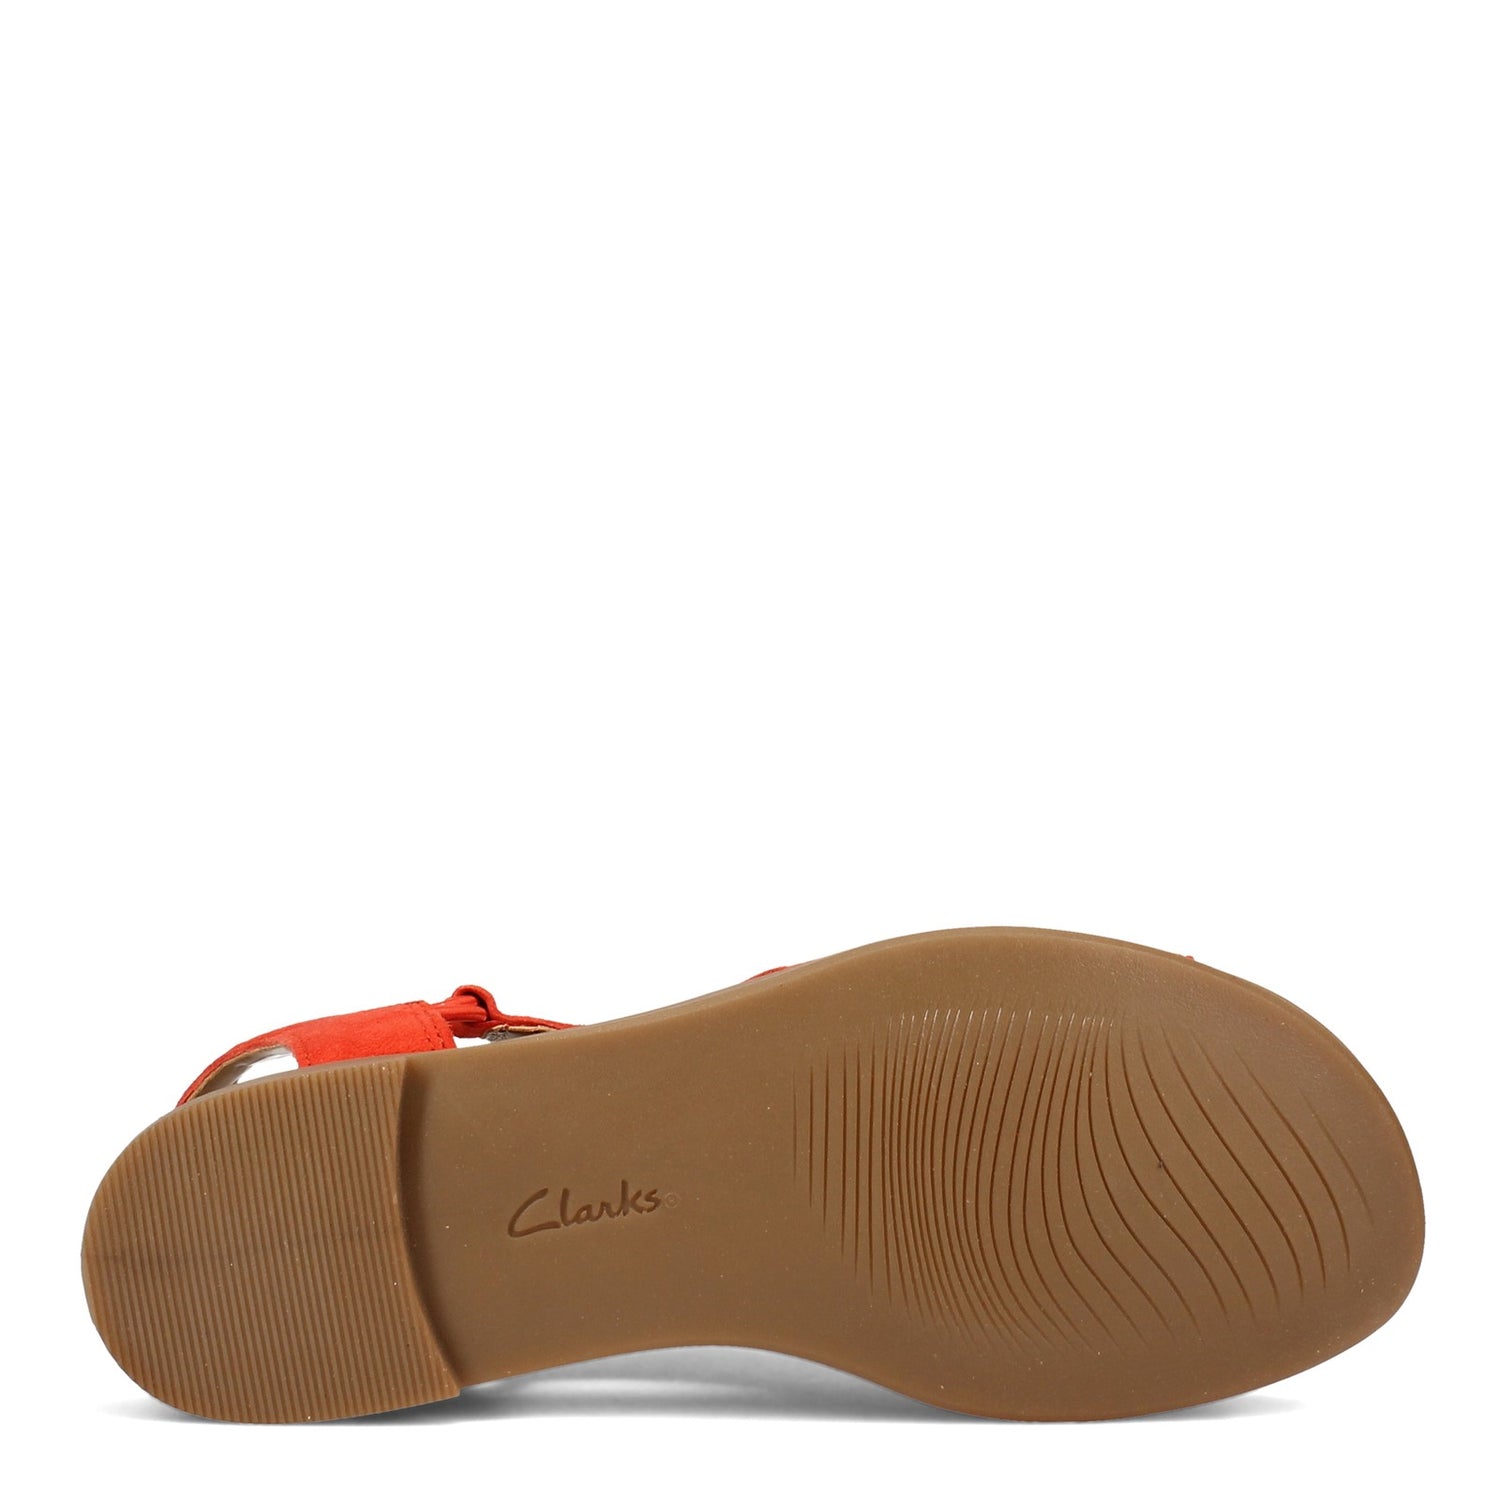 Peltz Shoes  Women's Clarks Reyna Swirl Sandal ORANGE 26157688